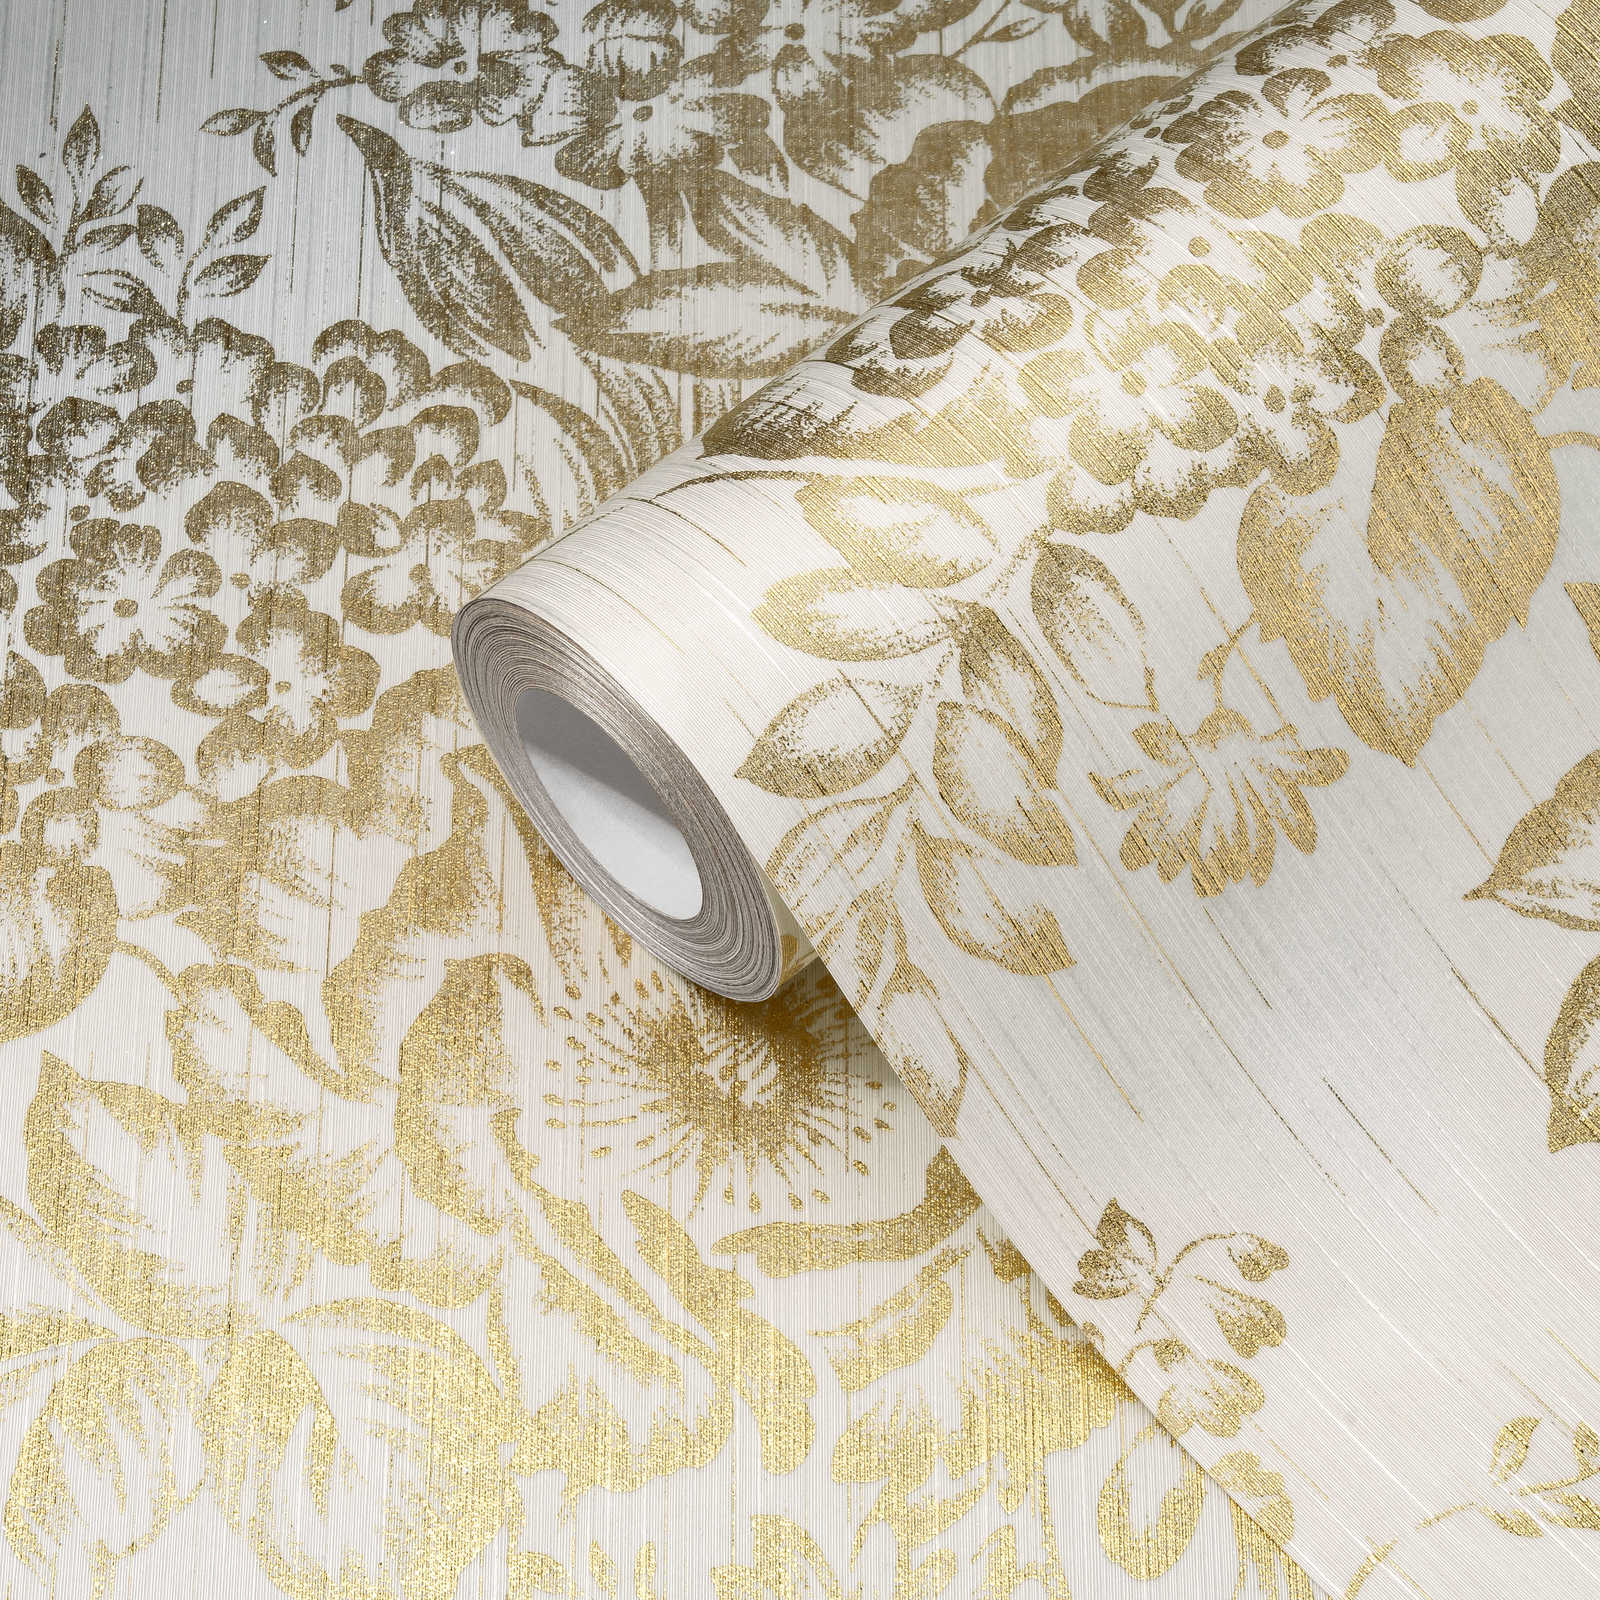             Textuurbehang met gouden bloemenpatroon - goud, wit
        